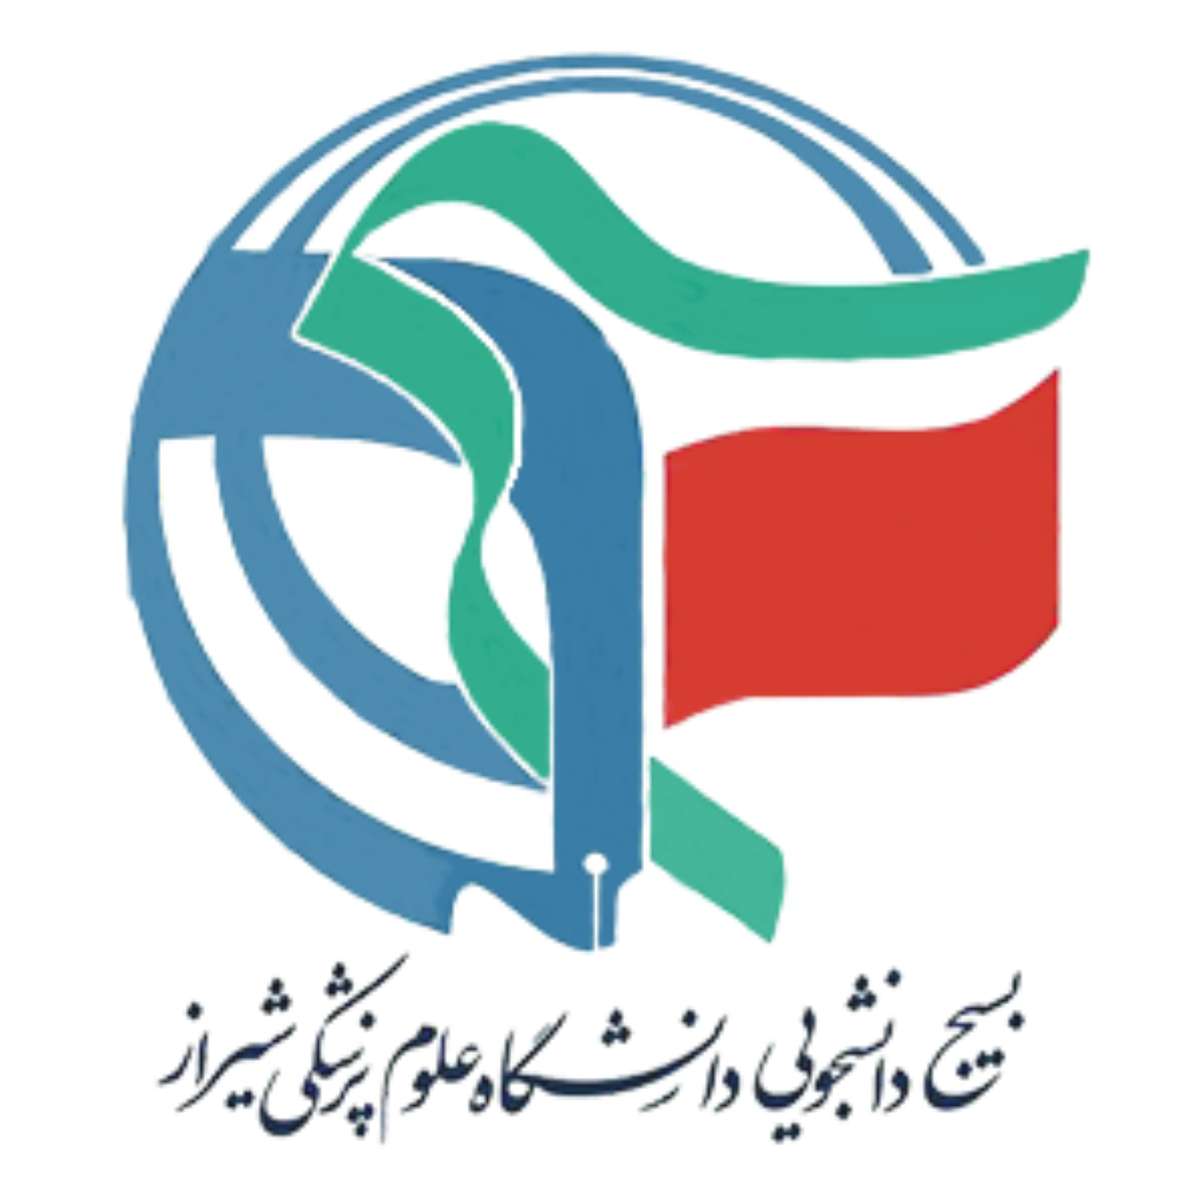 σχολή επιστημονικής ιατρικής شیراز online παζλ